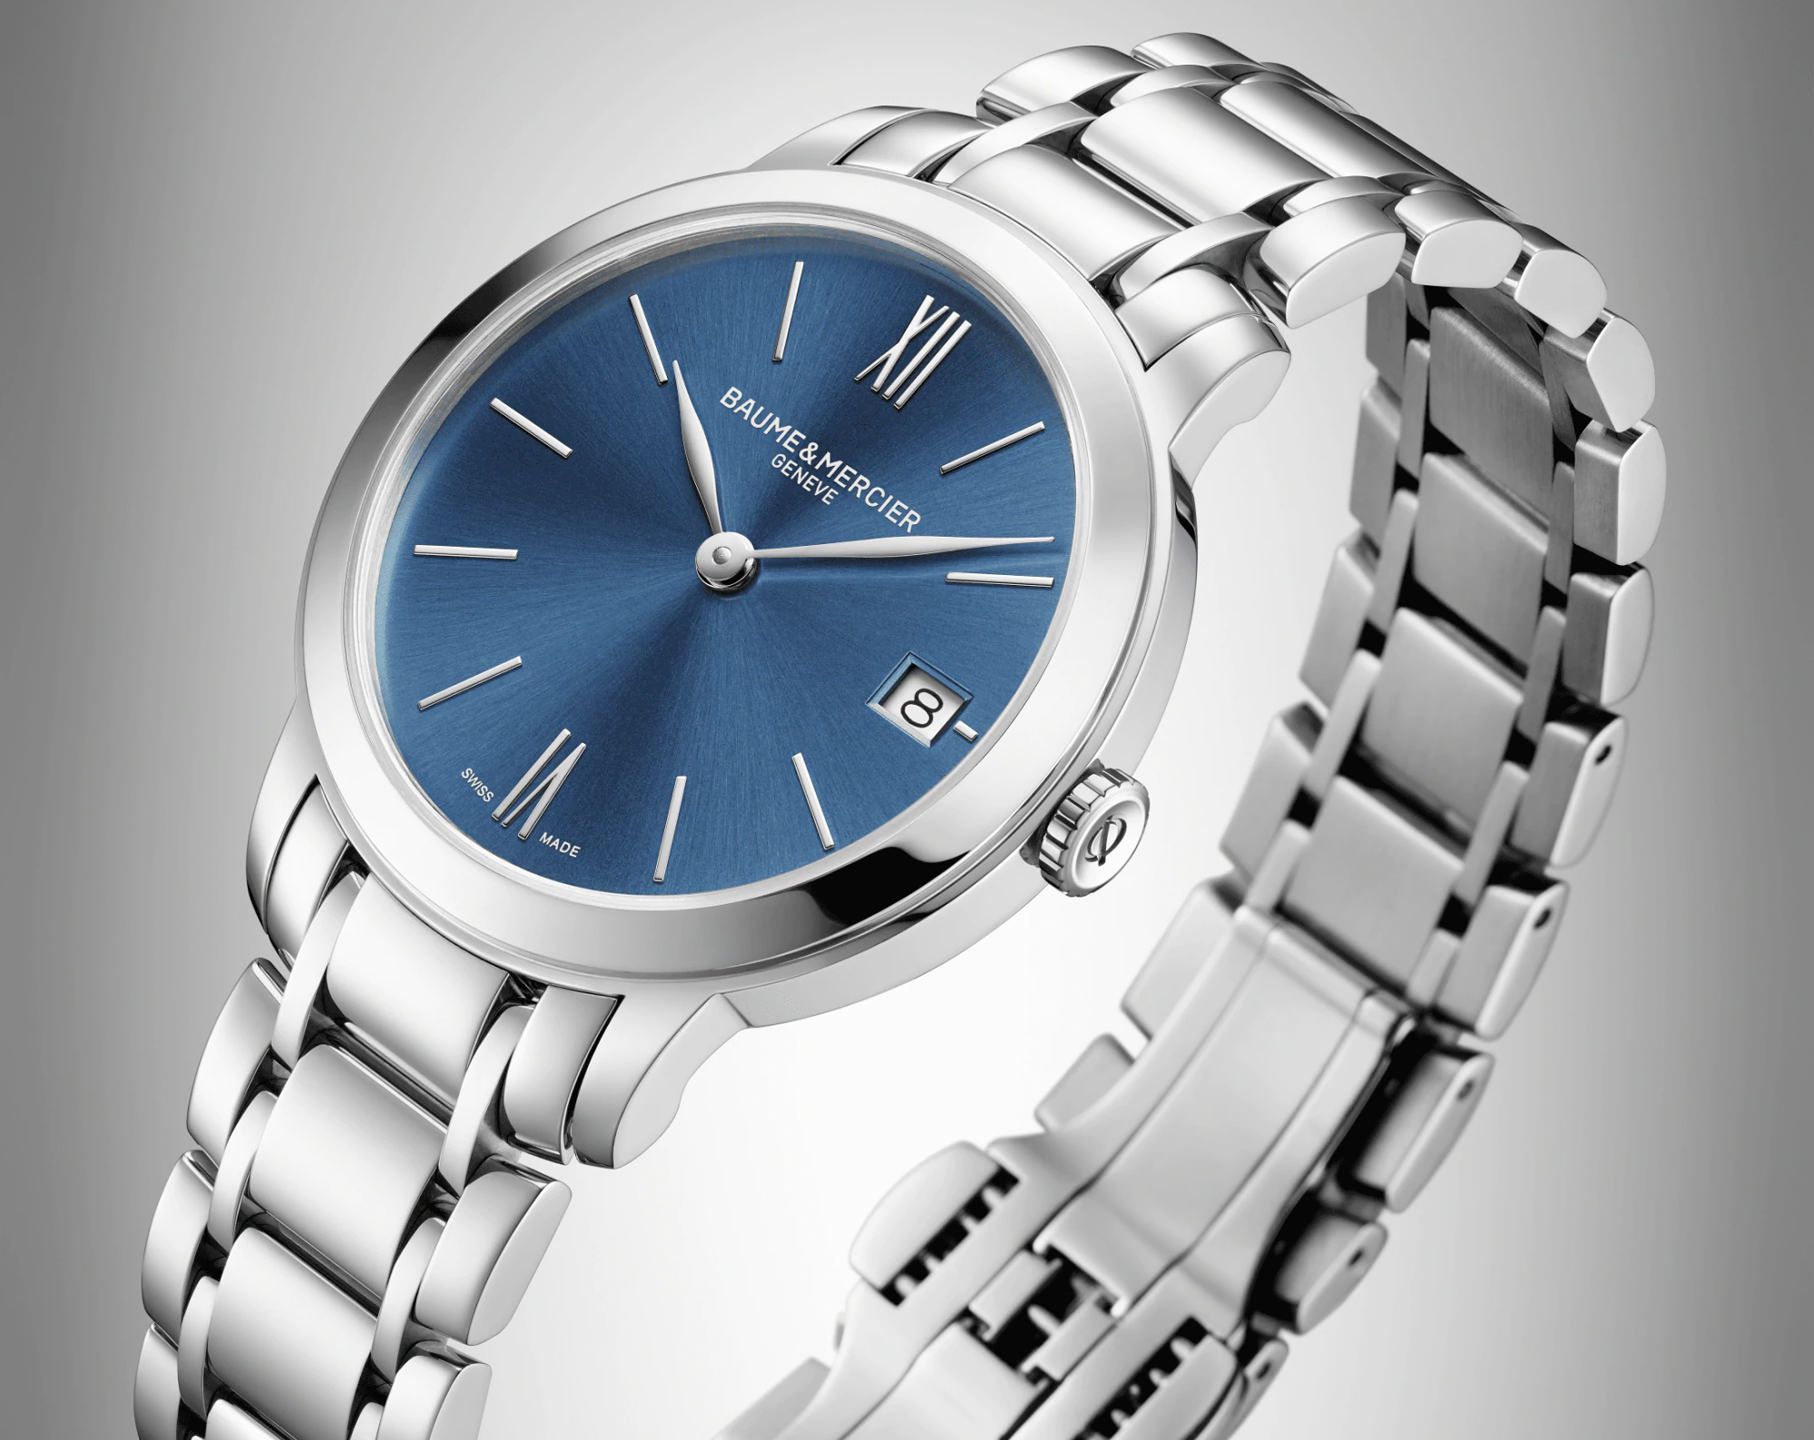 Baume & Mercier  31 mm Watch in Blue Dial For Women - 3